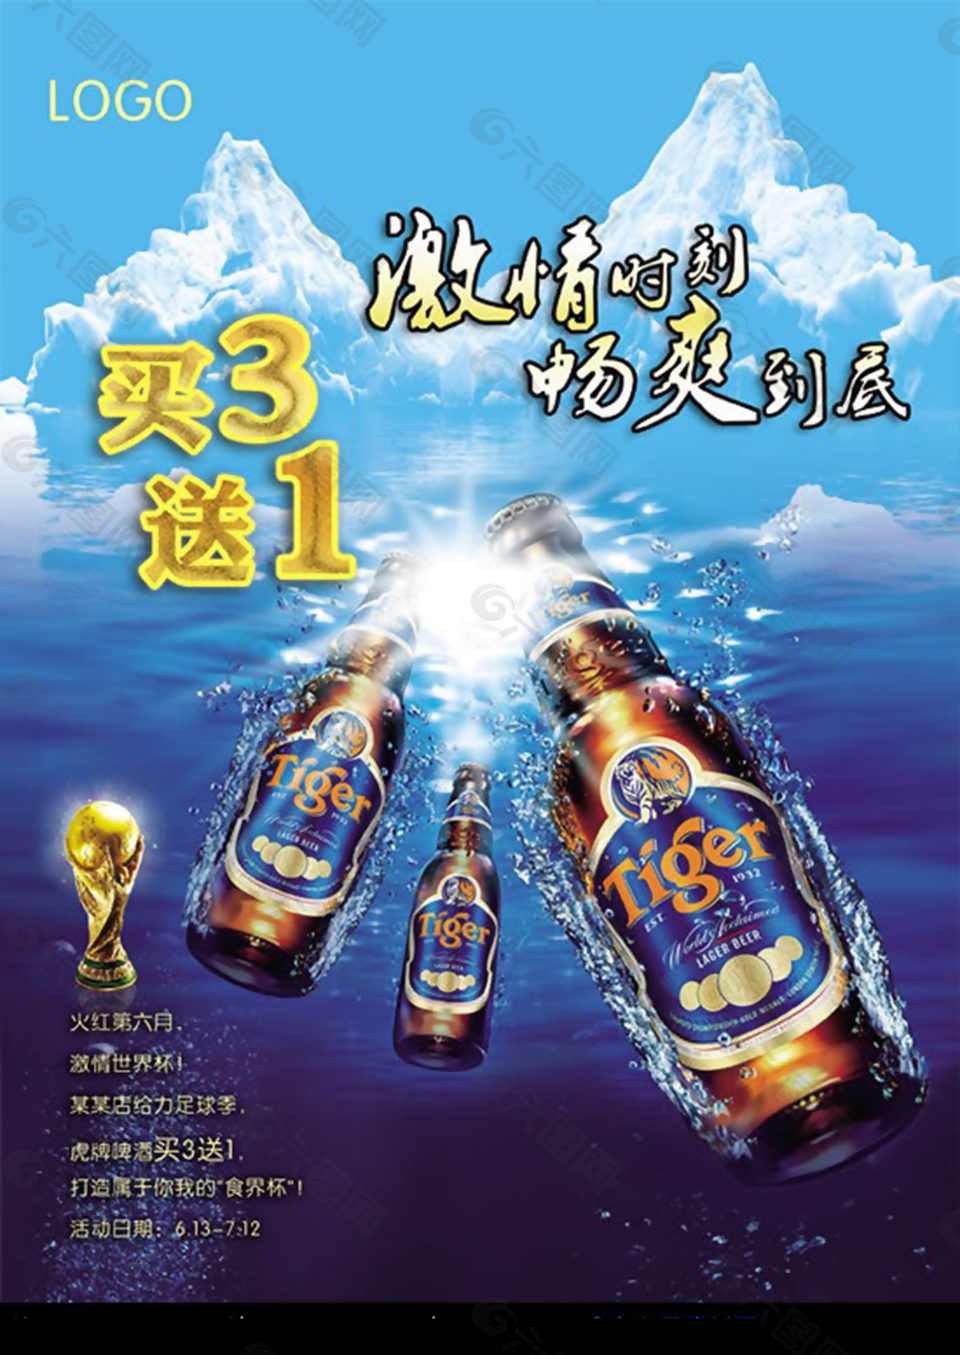 世界杯啤酒促销活动PSD模板